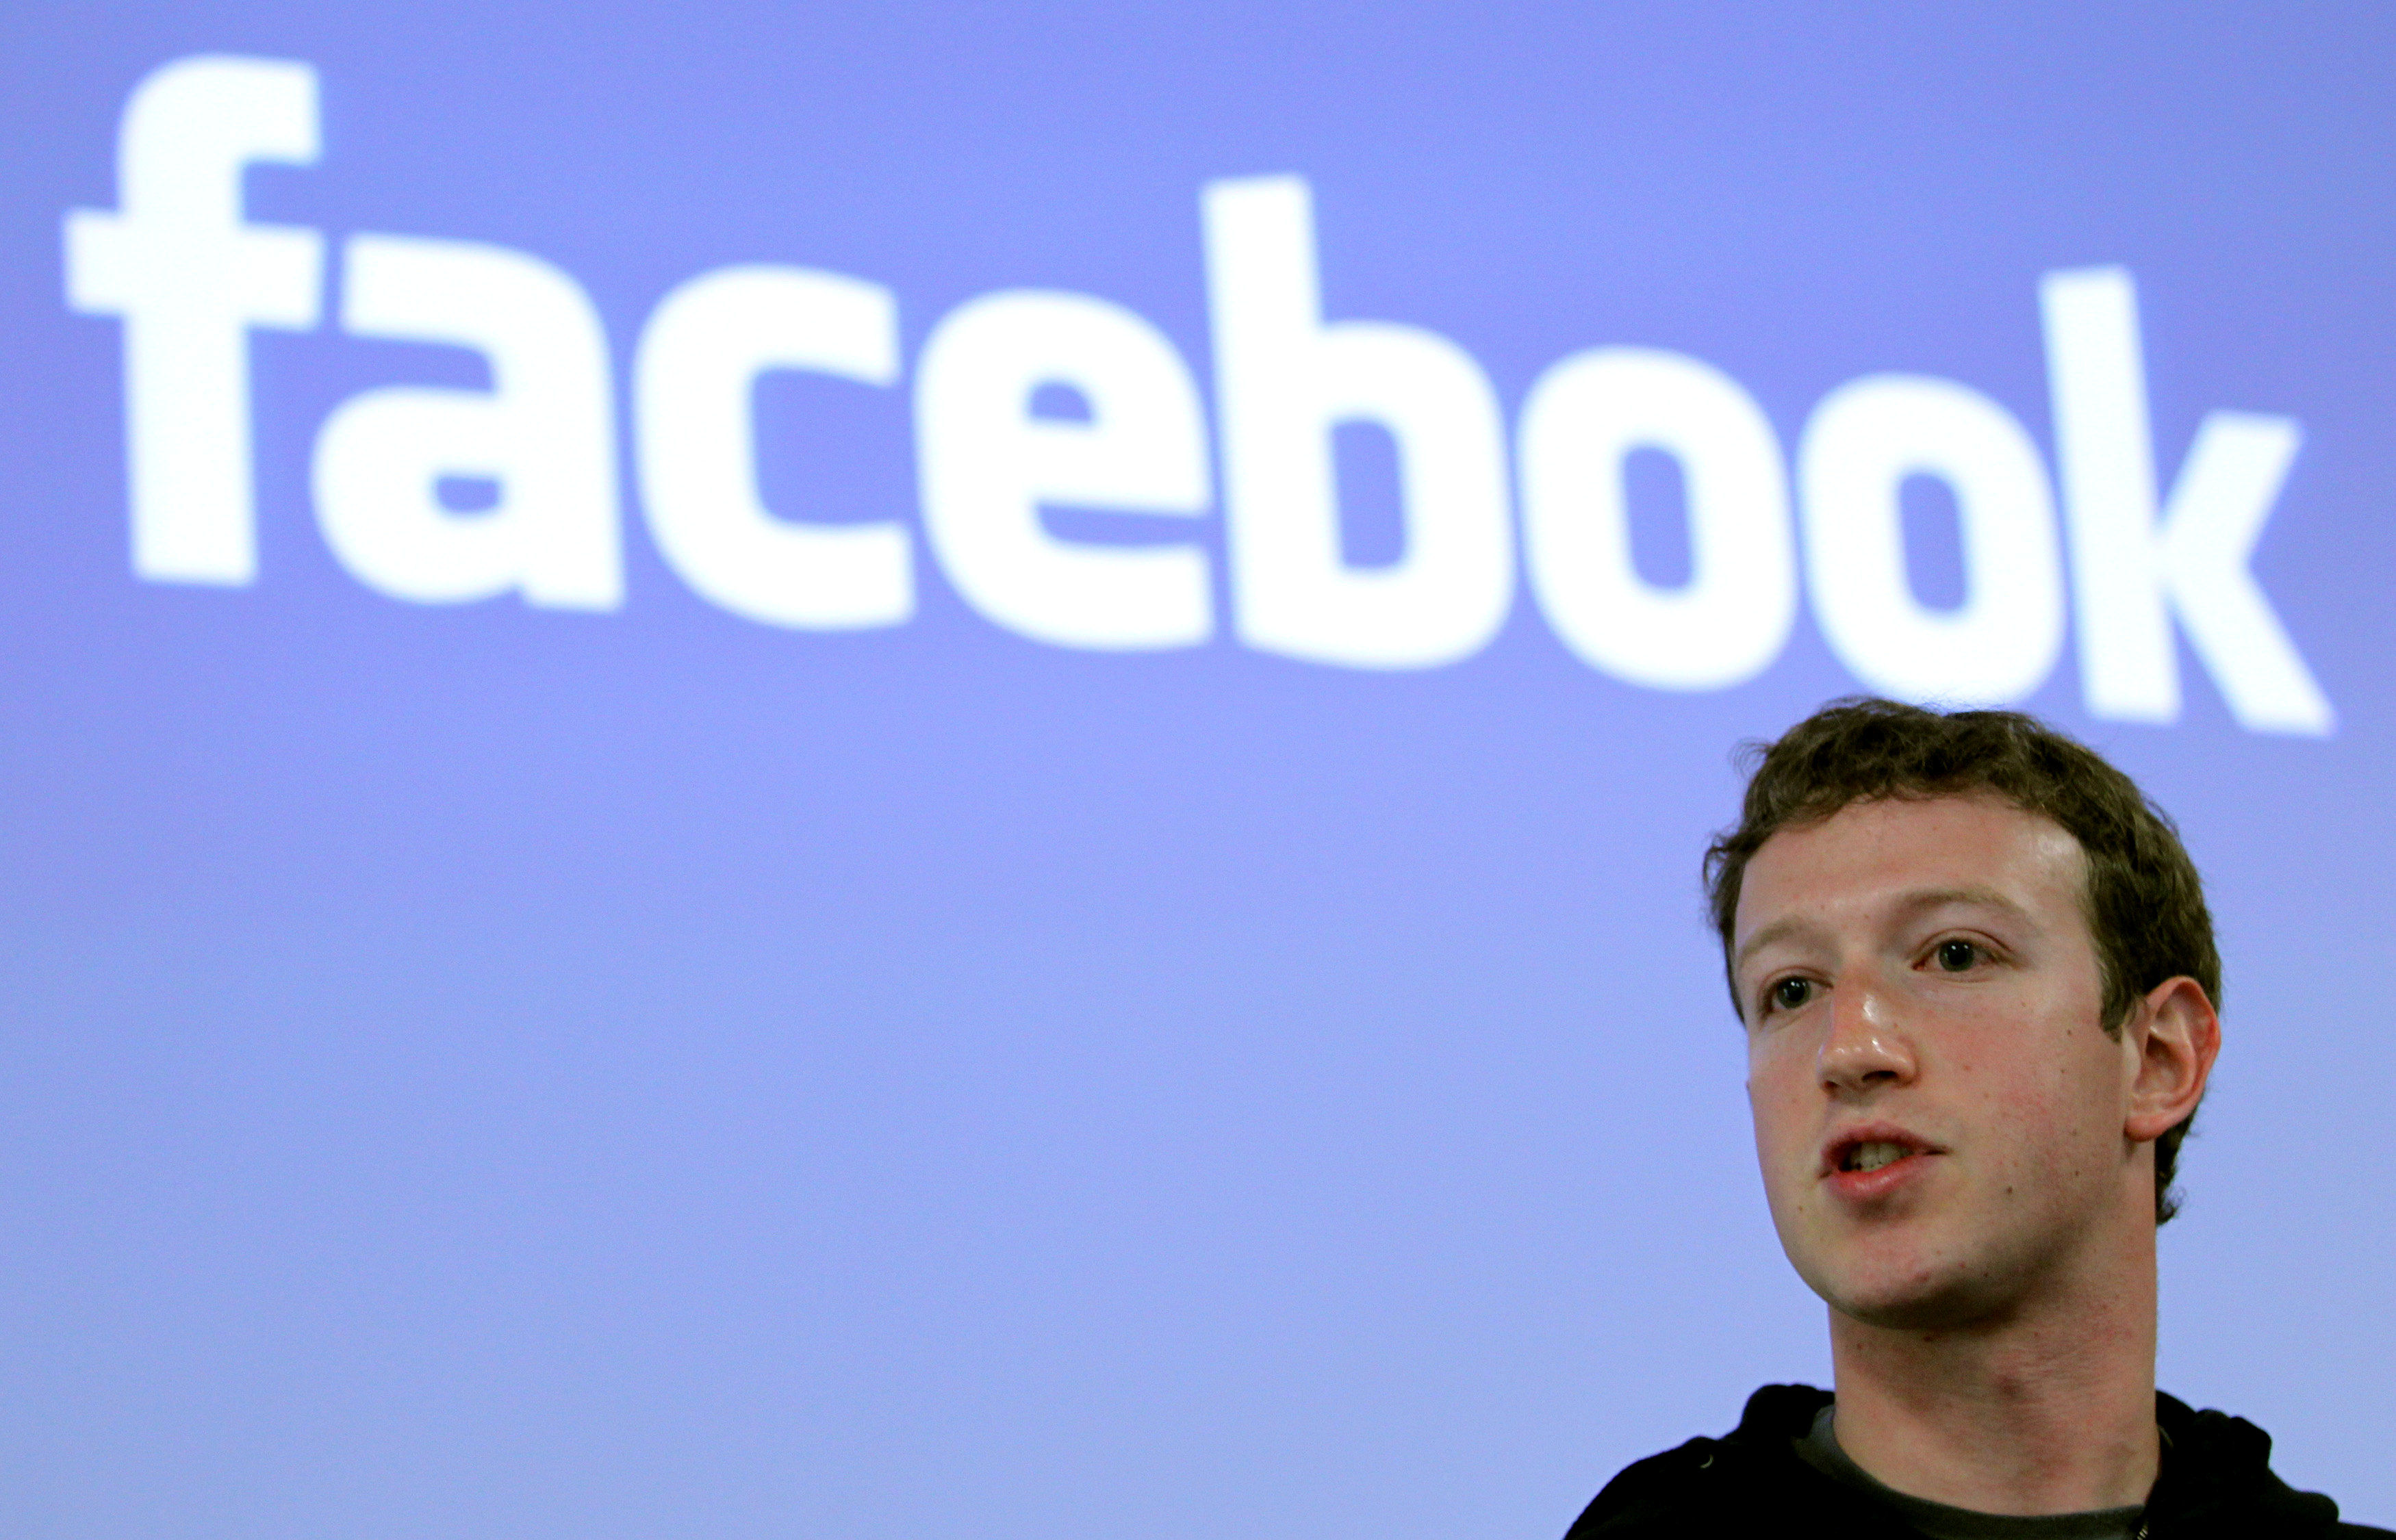 Ζούκερμπεργκ: Καταθέτει ενώπιον των αρχών των ΗΠΑ για το σκάνδαλο του Facebook